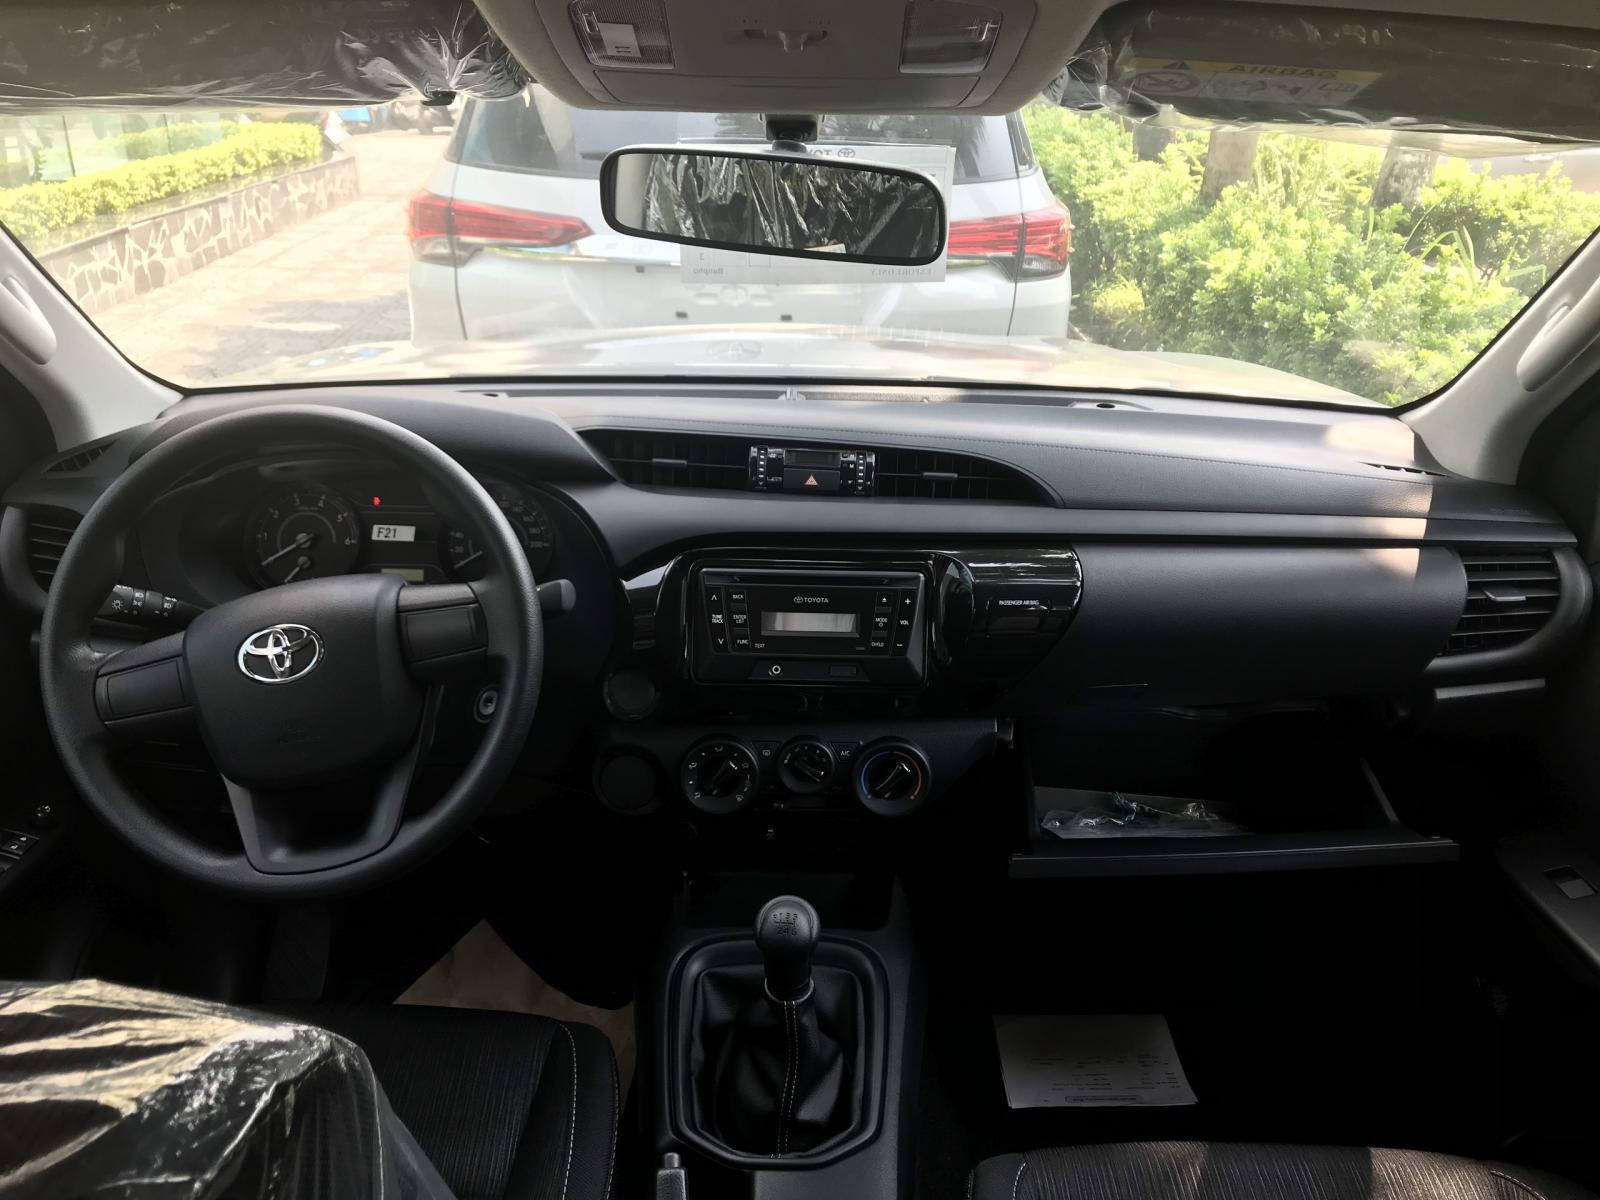 Toyota Hilux E 2019 - Mua bán Toyota Hilux giá rẻ nhất, giảm ngay tiền mặt, tặng phụ kiện, hỗ trợ trả góp 80%, LH: 097 698 7767